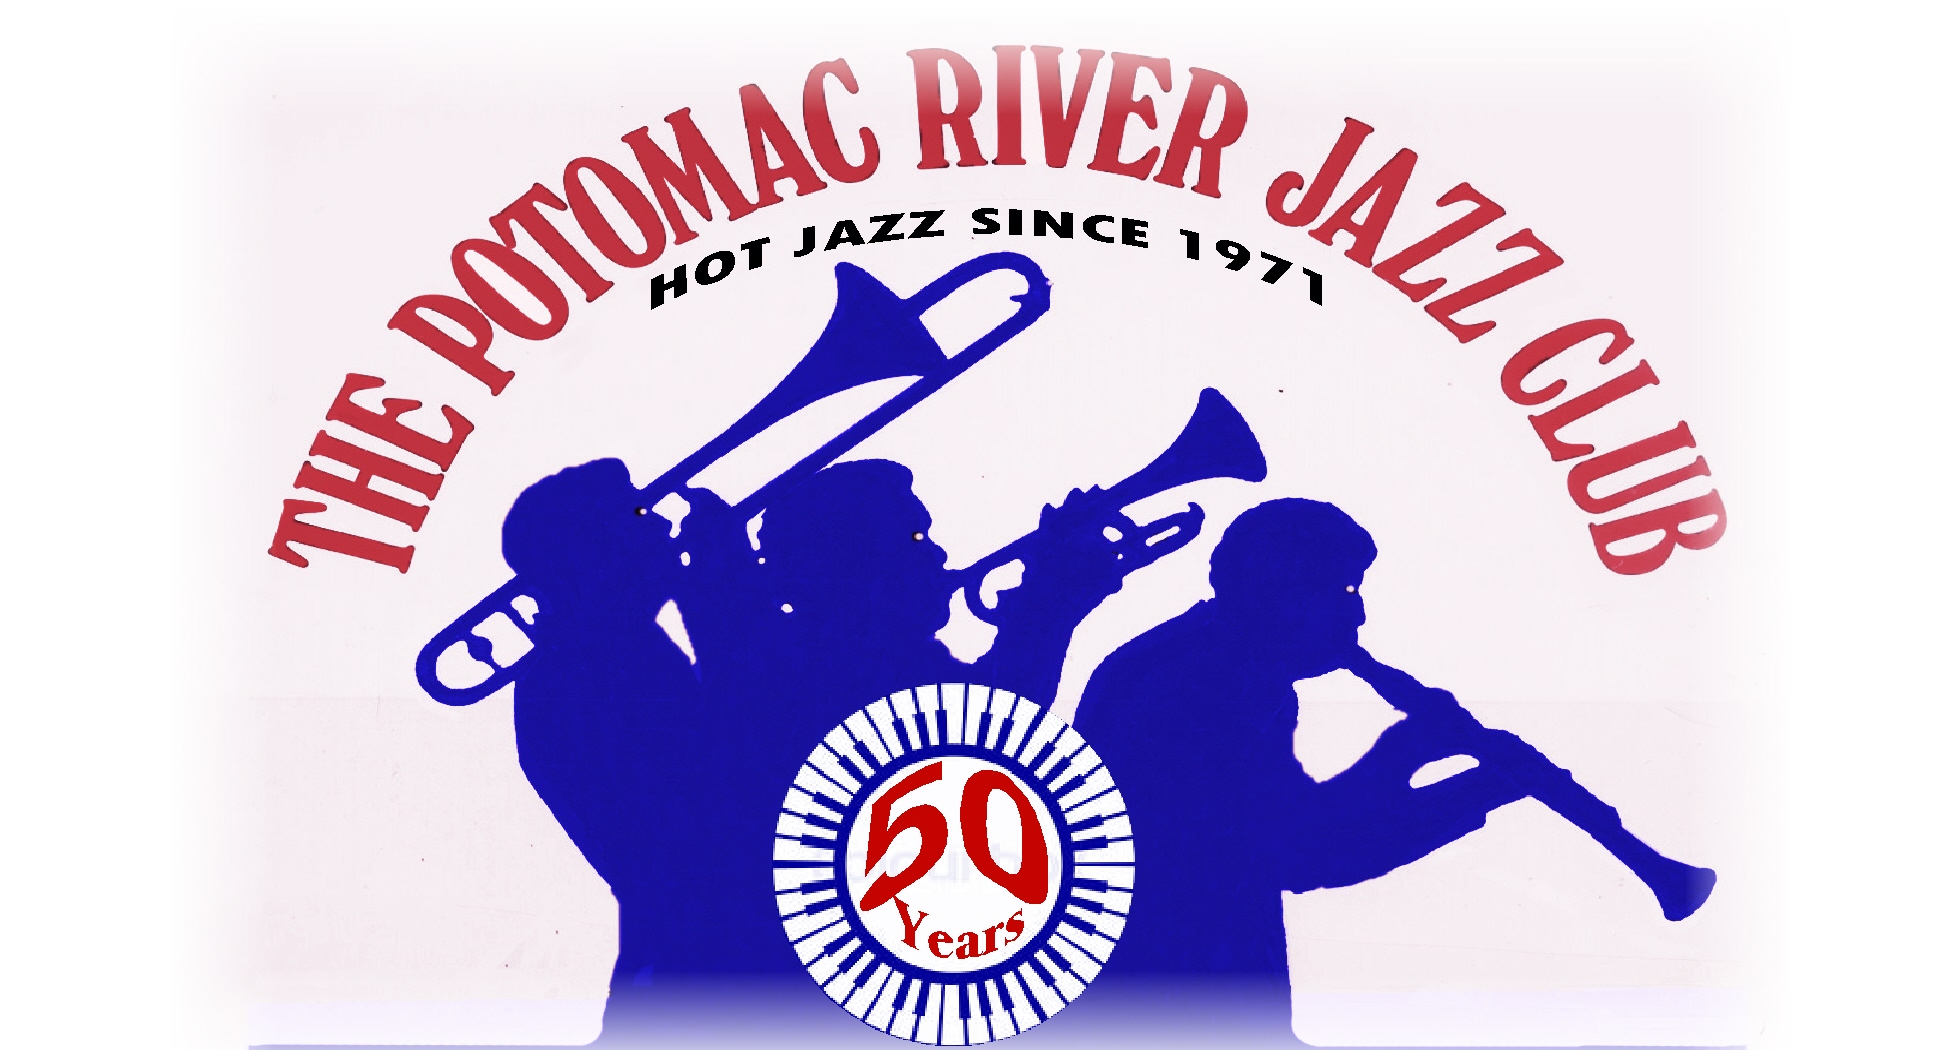 Potomac River Jazz Club [ www.prjc.org ]